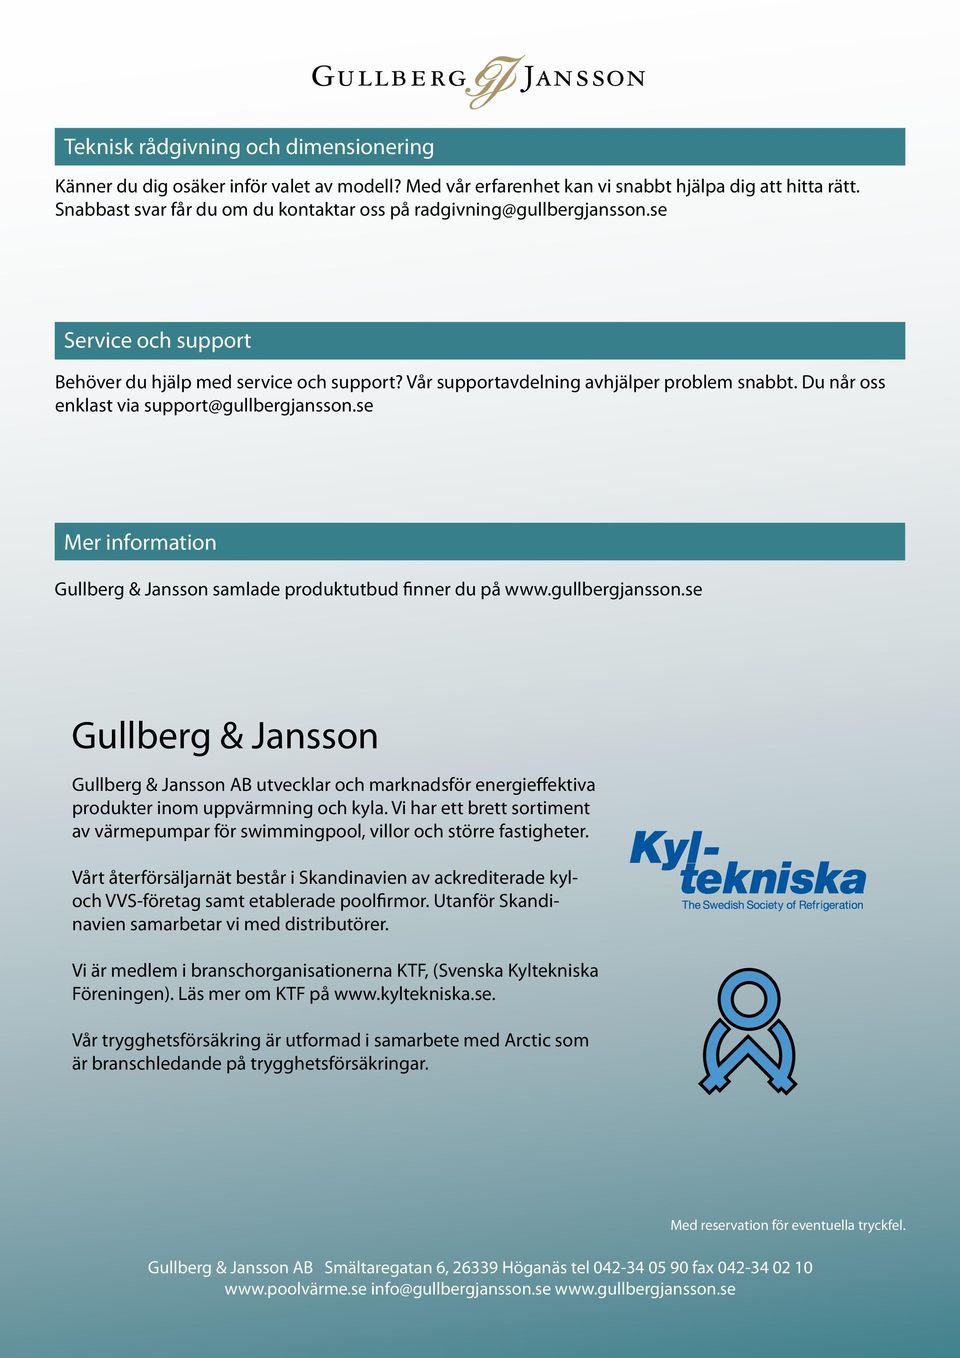 Du når oss enklast via support@gullbergjansson.se Mer information Gullberg & Jansson samlade produktutbud finner du på www.gullbergjansson.se Gullberg & Jansson utvecklar och marknadsför energieffektiva produkter inom uppvärmning och kyla.